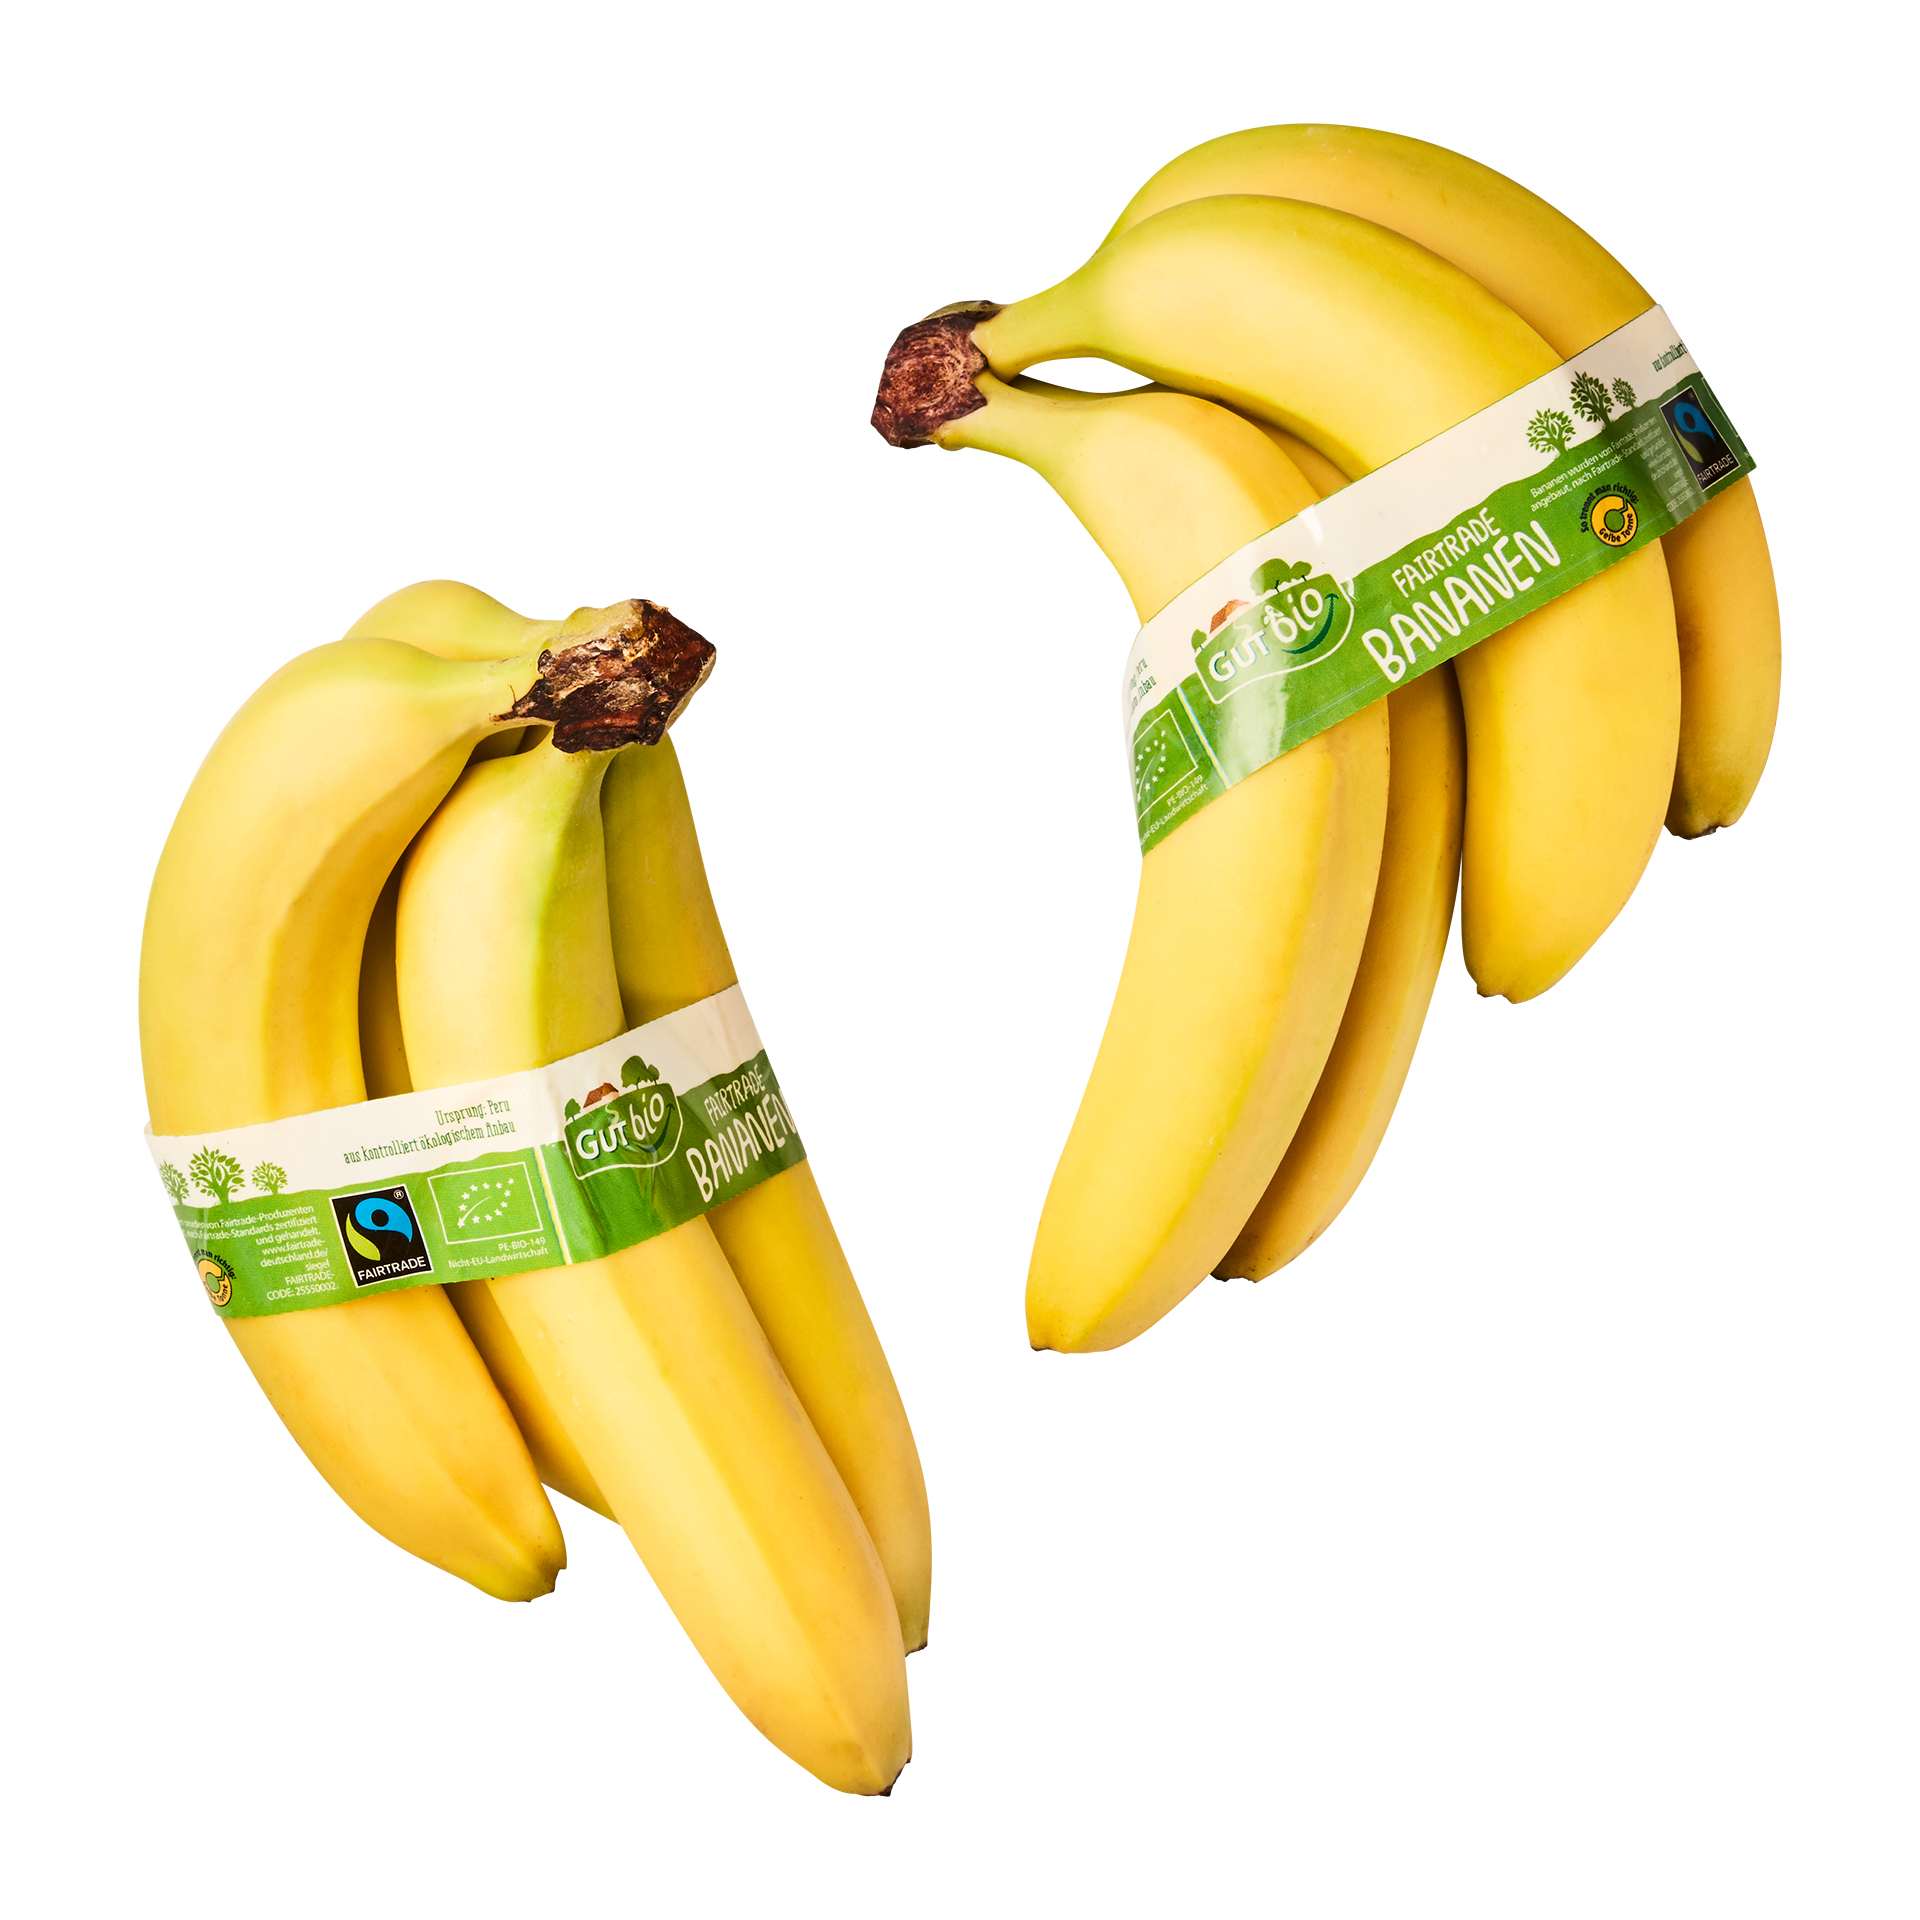 GUT BIO Bio-Bananen, Fairtrade ALDI günstig Nord bei